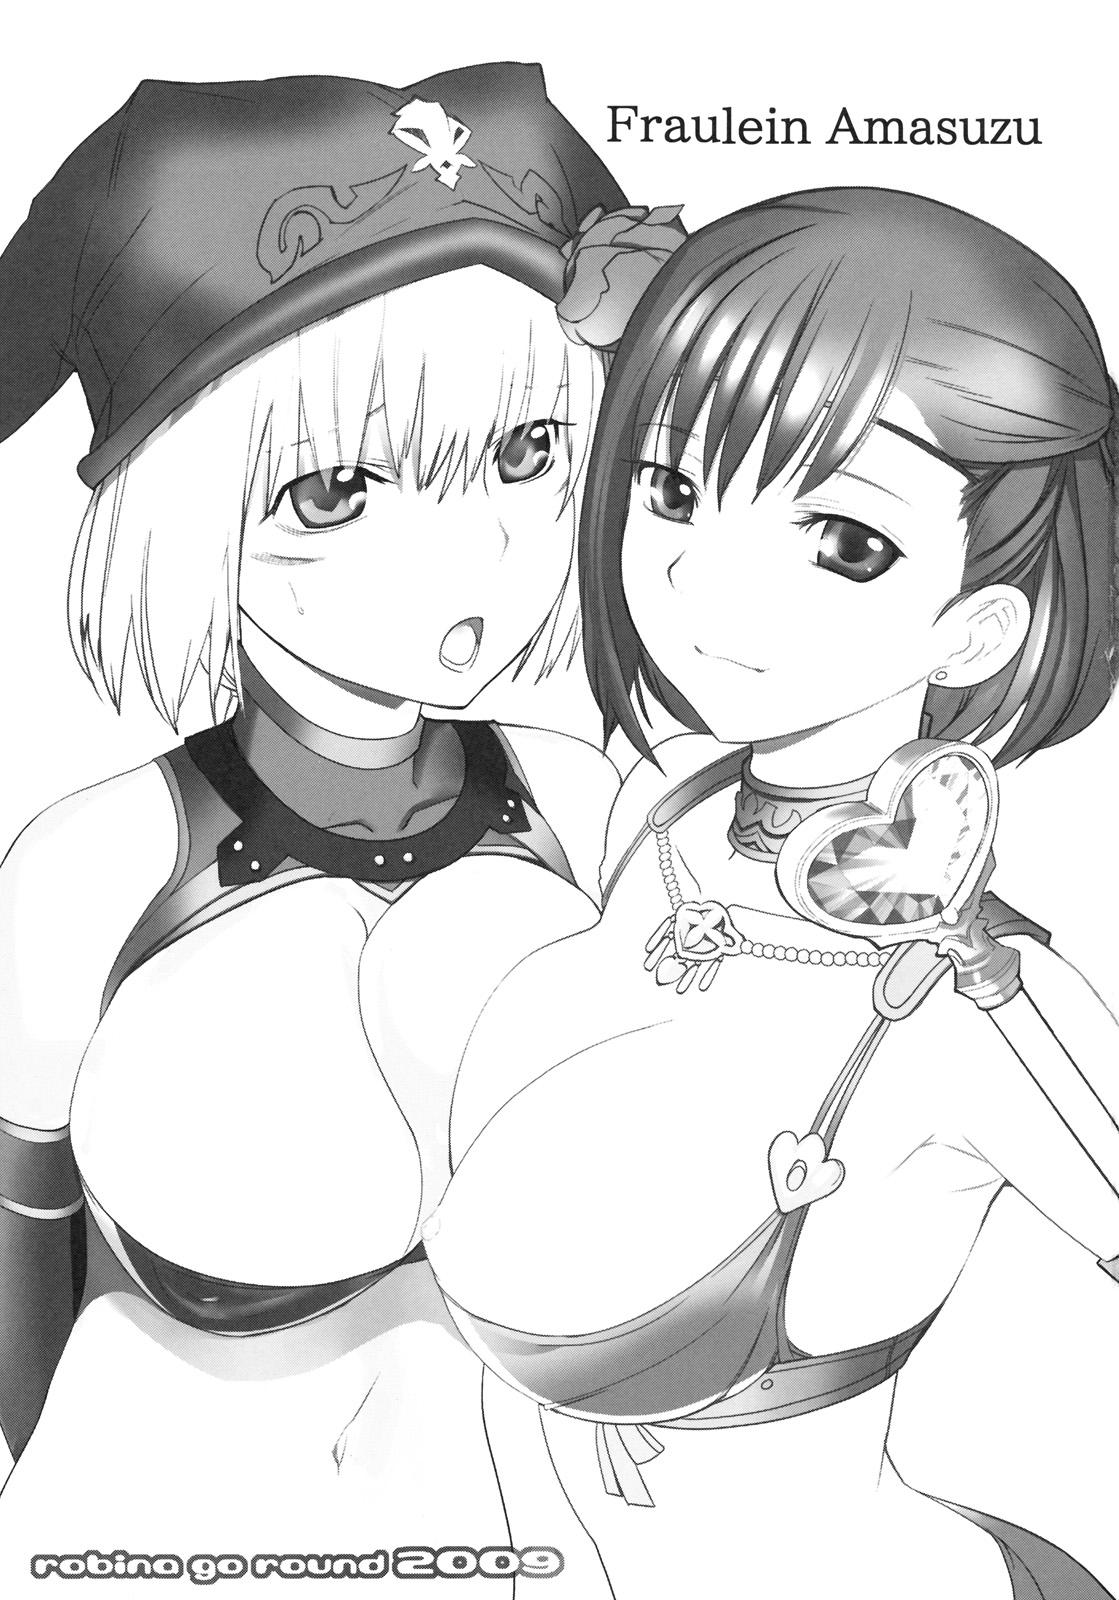 Big Cock Fraulein Amasuzu - Final fantasy xi Gay Spank - Page 2